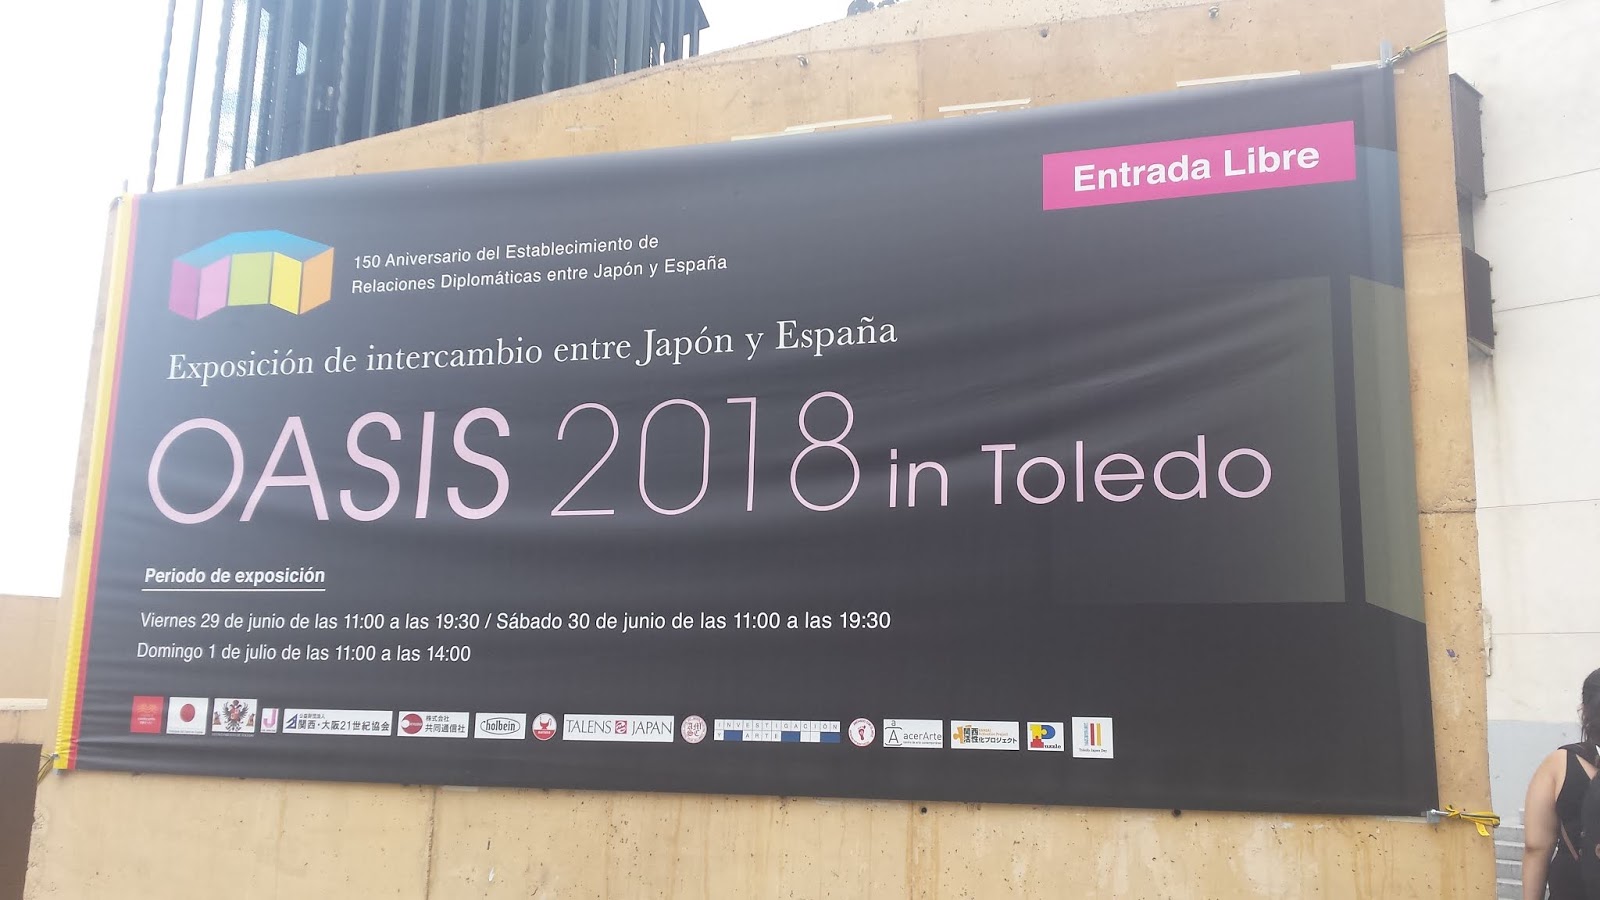 Oasis 2018 en Toledo